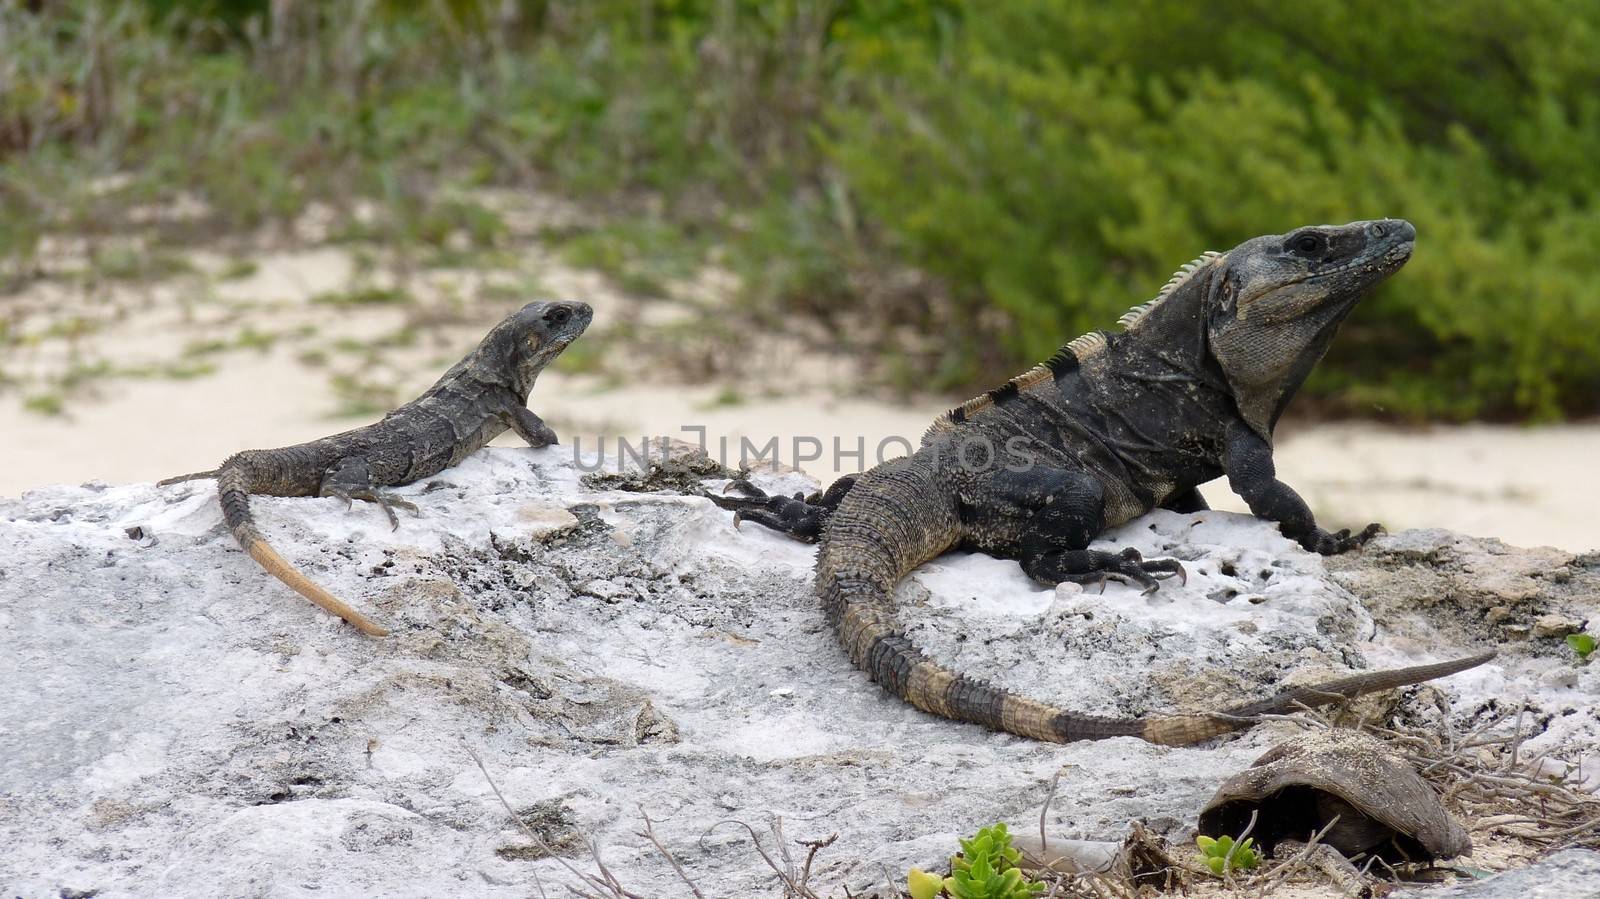 Iguanas on a rock in Playa del Carmen in Mexico